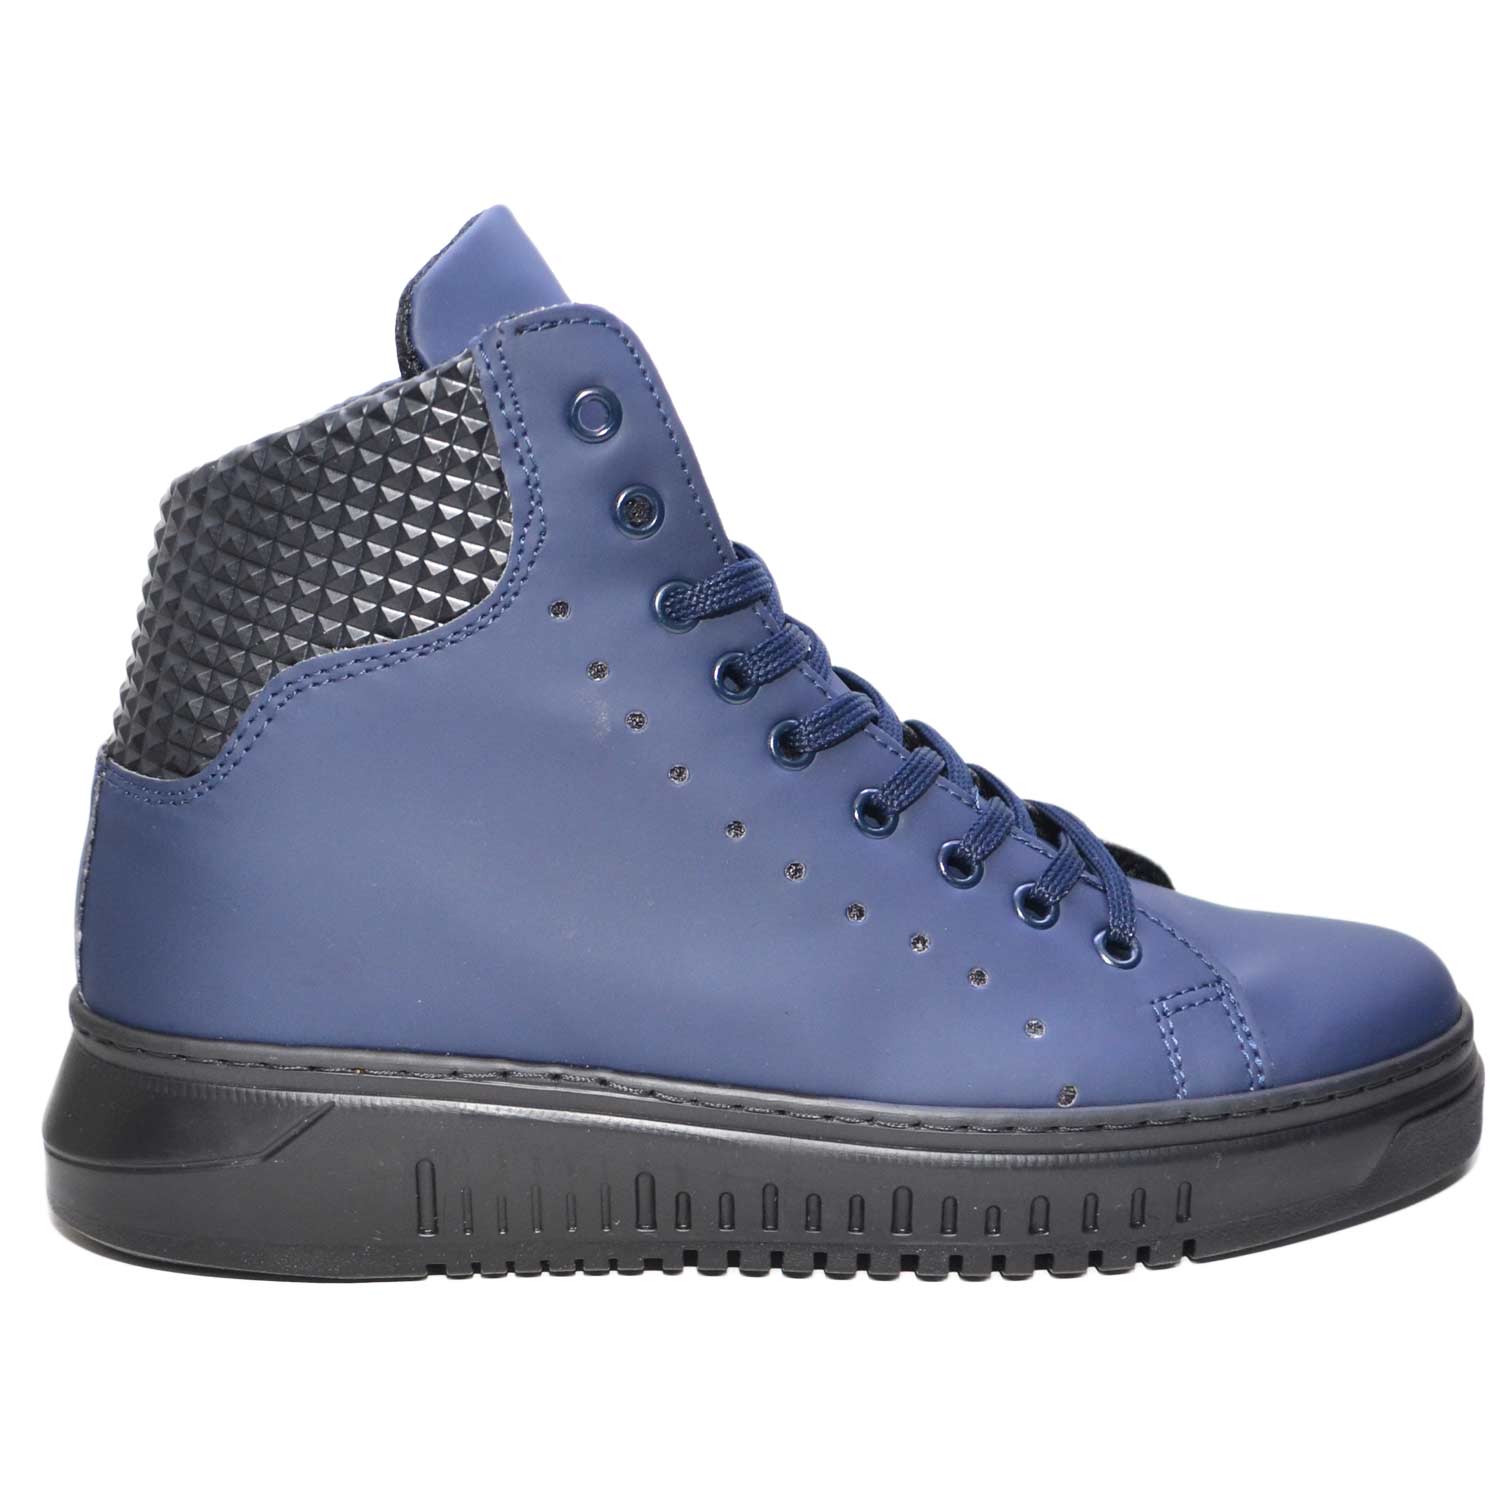 Sneakers alta art 250 pelle gommato blu fondo doppio army vera pelle ...